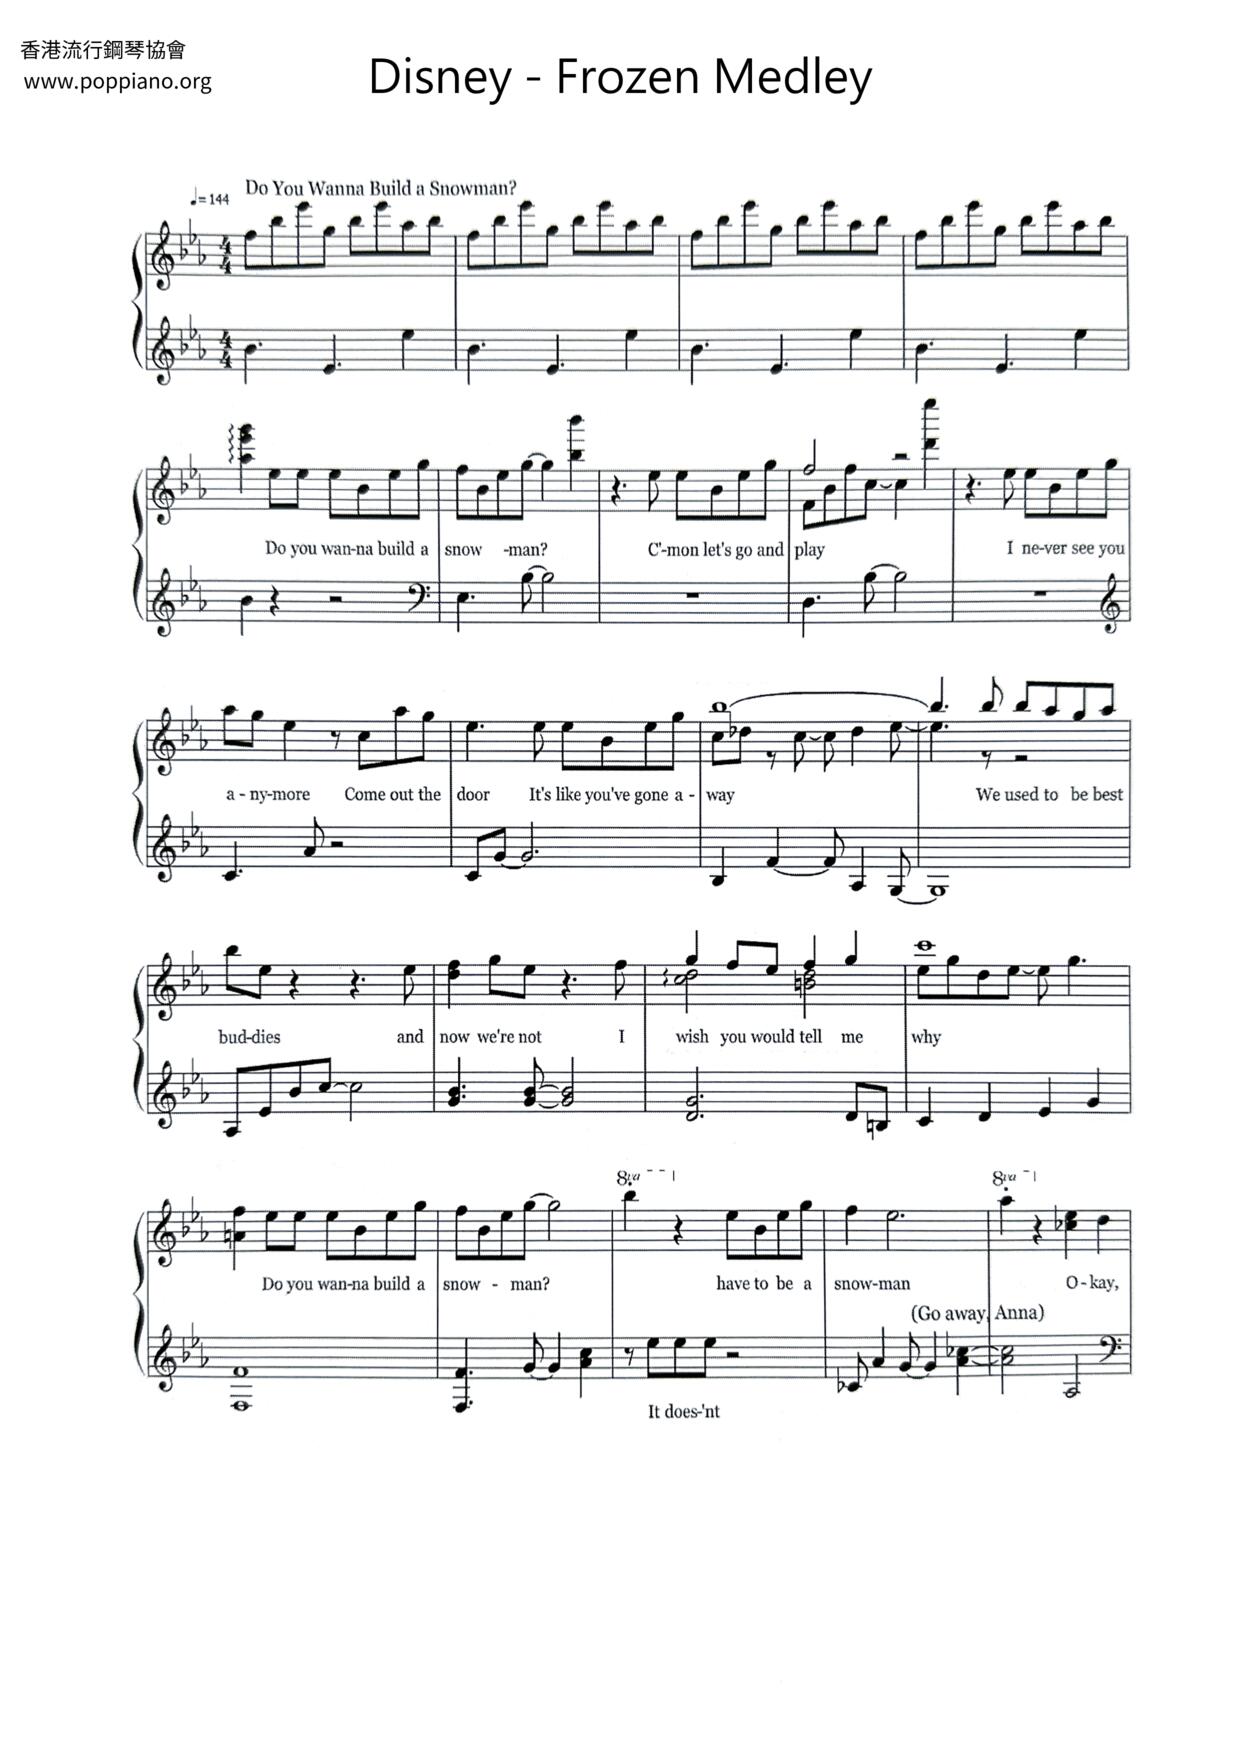 Frozen Medley Score